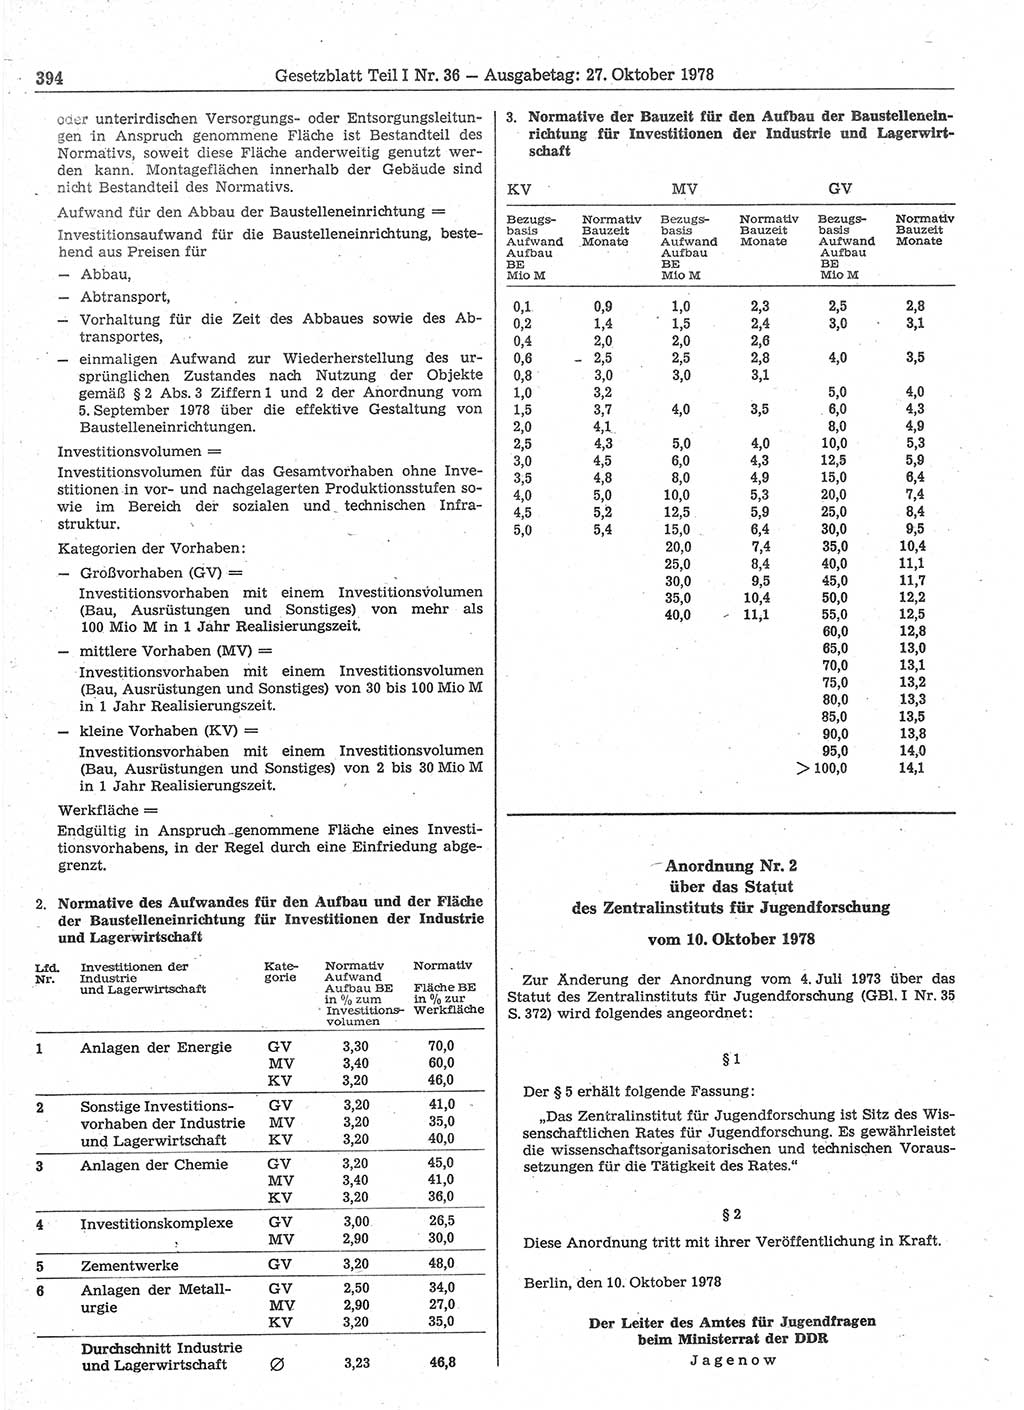 Gesetzblatt (GBl.) der Deutschen Demokratischen Republik (DDR) Teil Ⅰ 1978, Seite 394 (GBl. DDR Ⅰ 1978, S. 394)